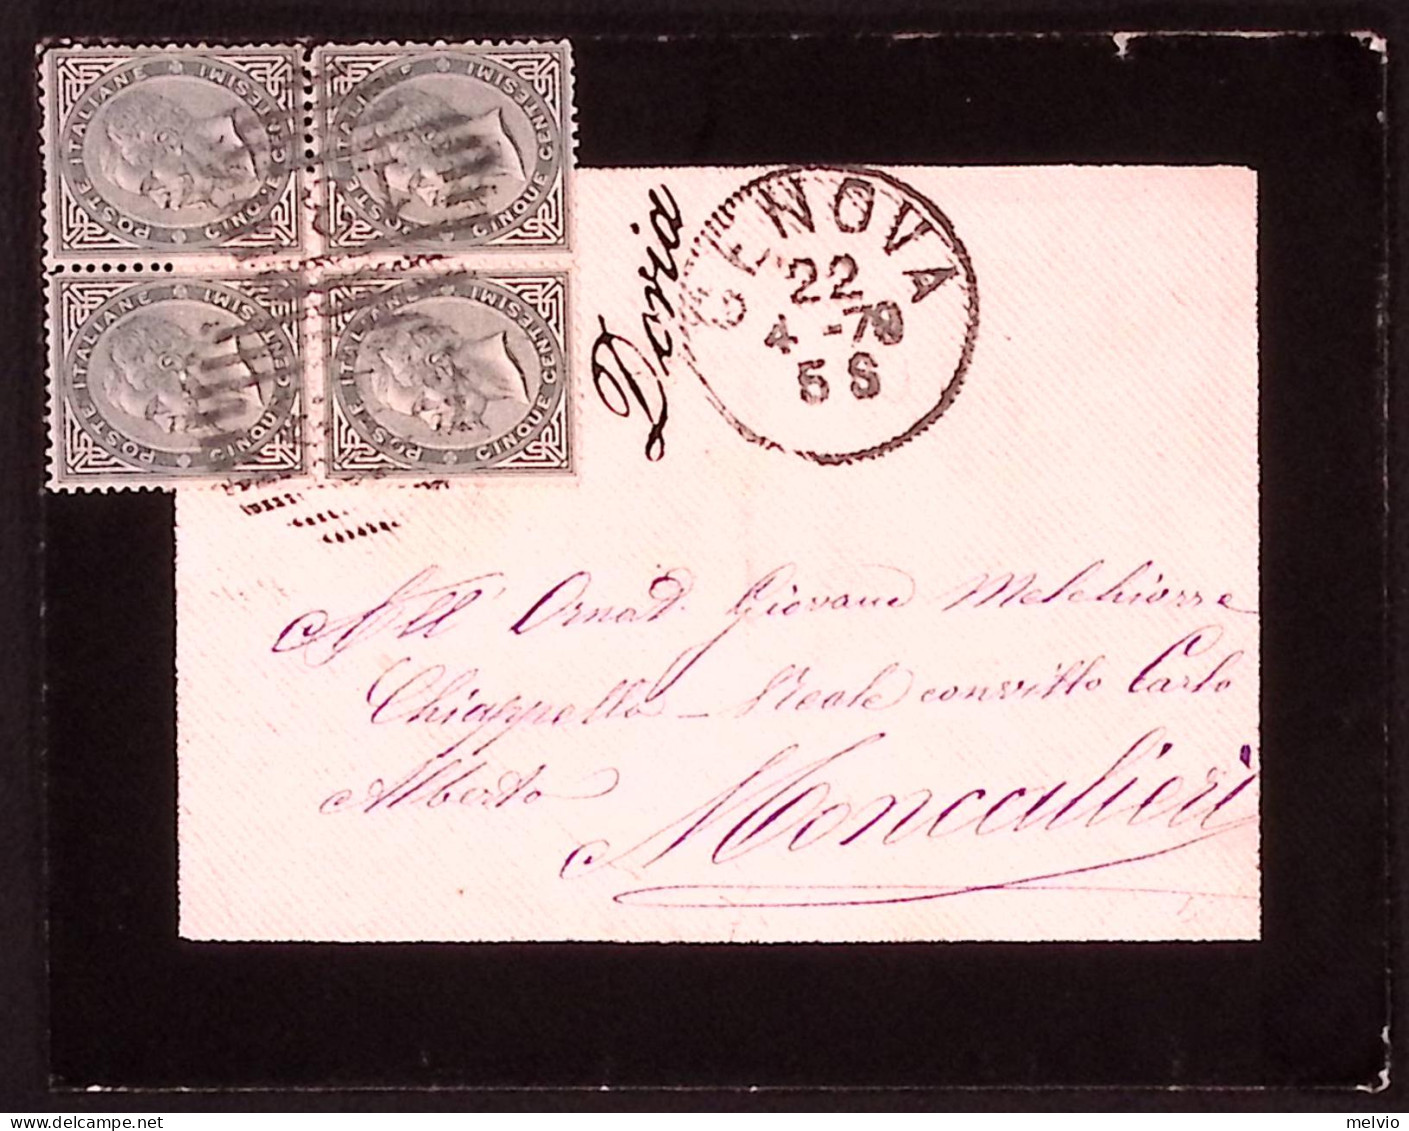 1879-Doria Cors Collettoria Su Busta Listata Lutto Genova (22.4.70) Affr. Effigi - Storia Postale